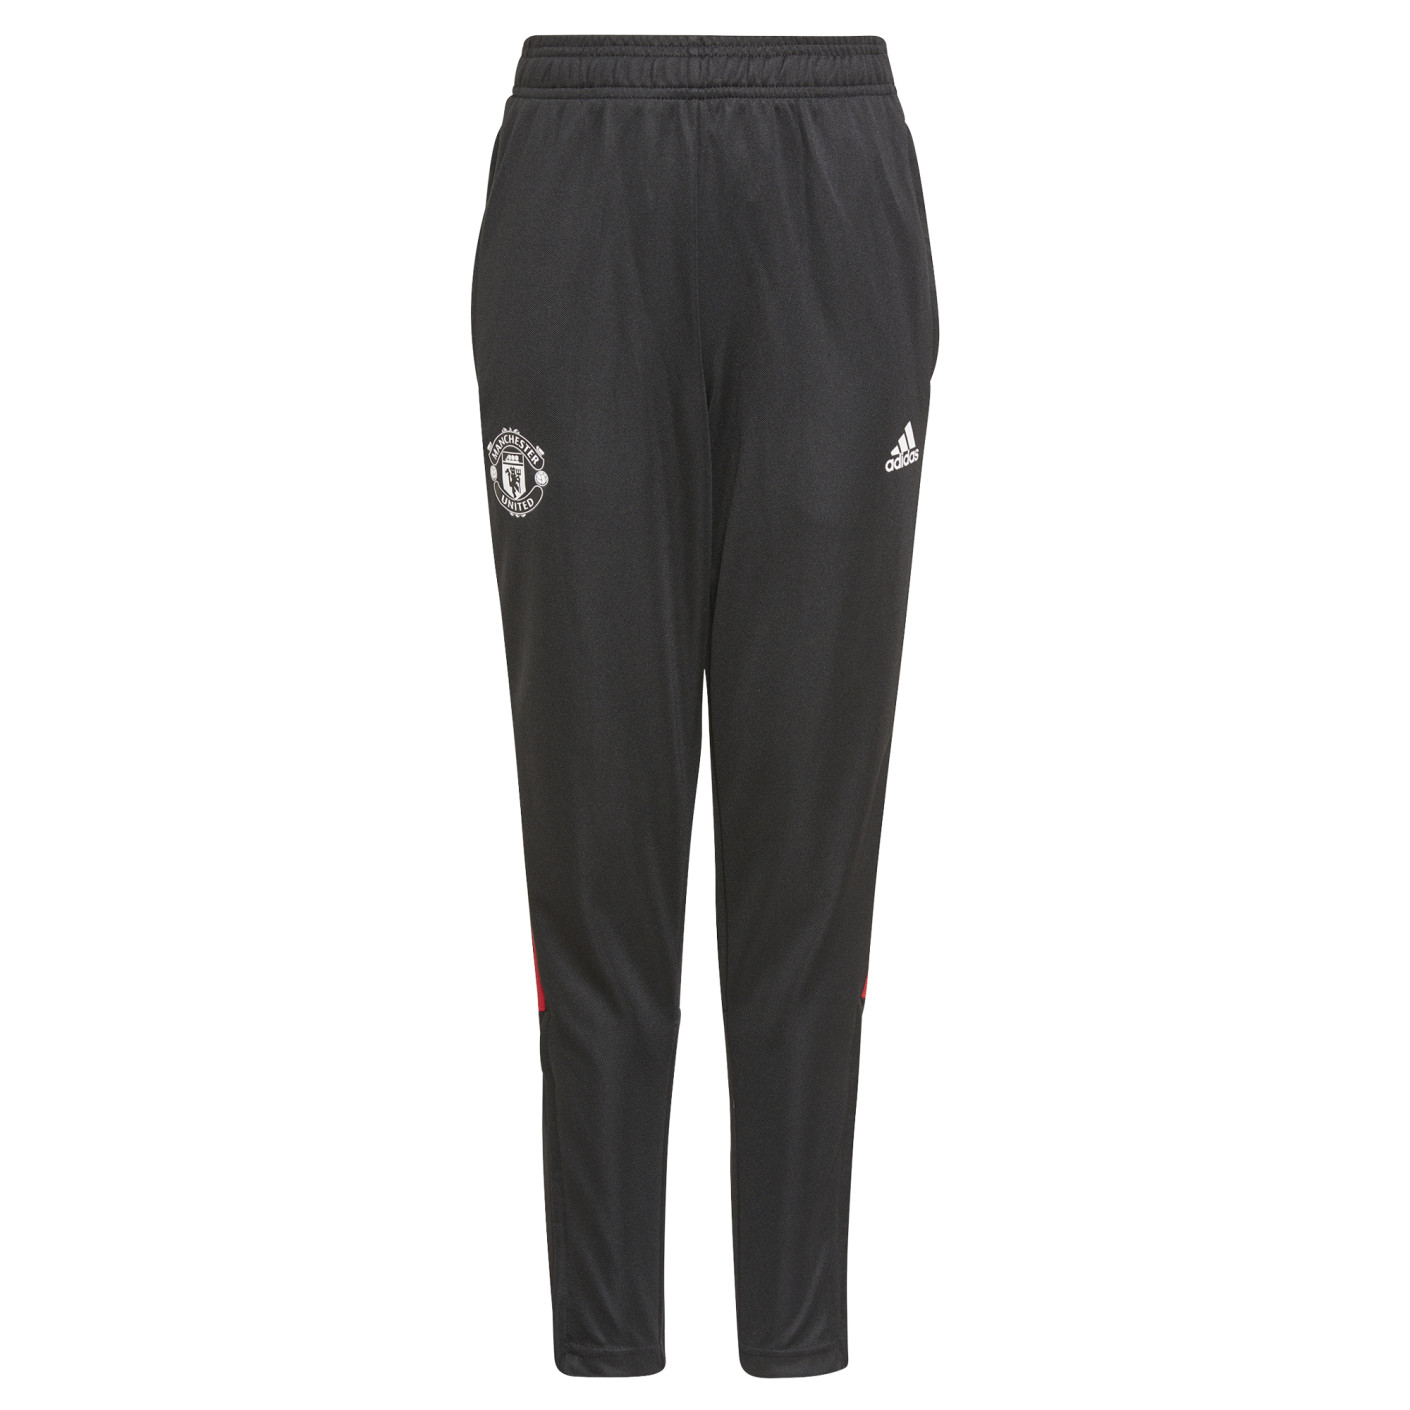 Pantalon d'entraînement Adidas Manchester United pour enfants 2021-2022, noir